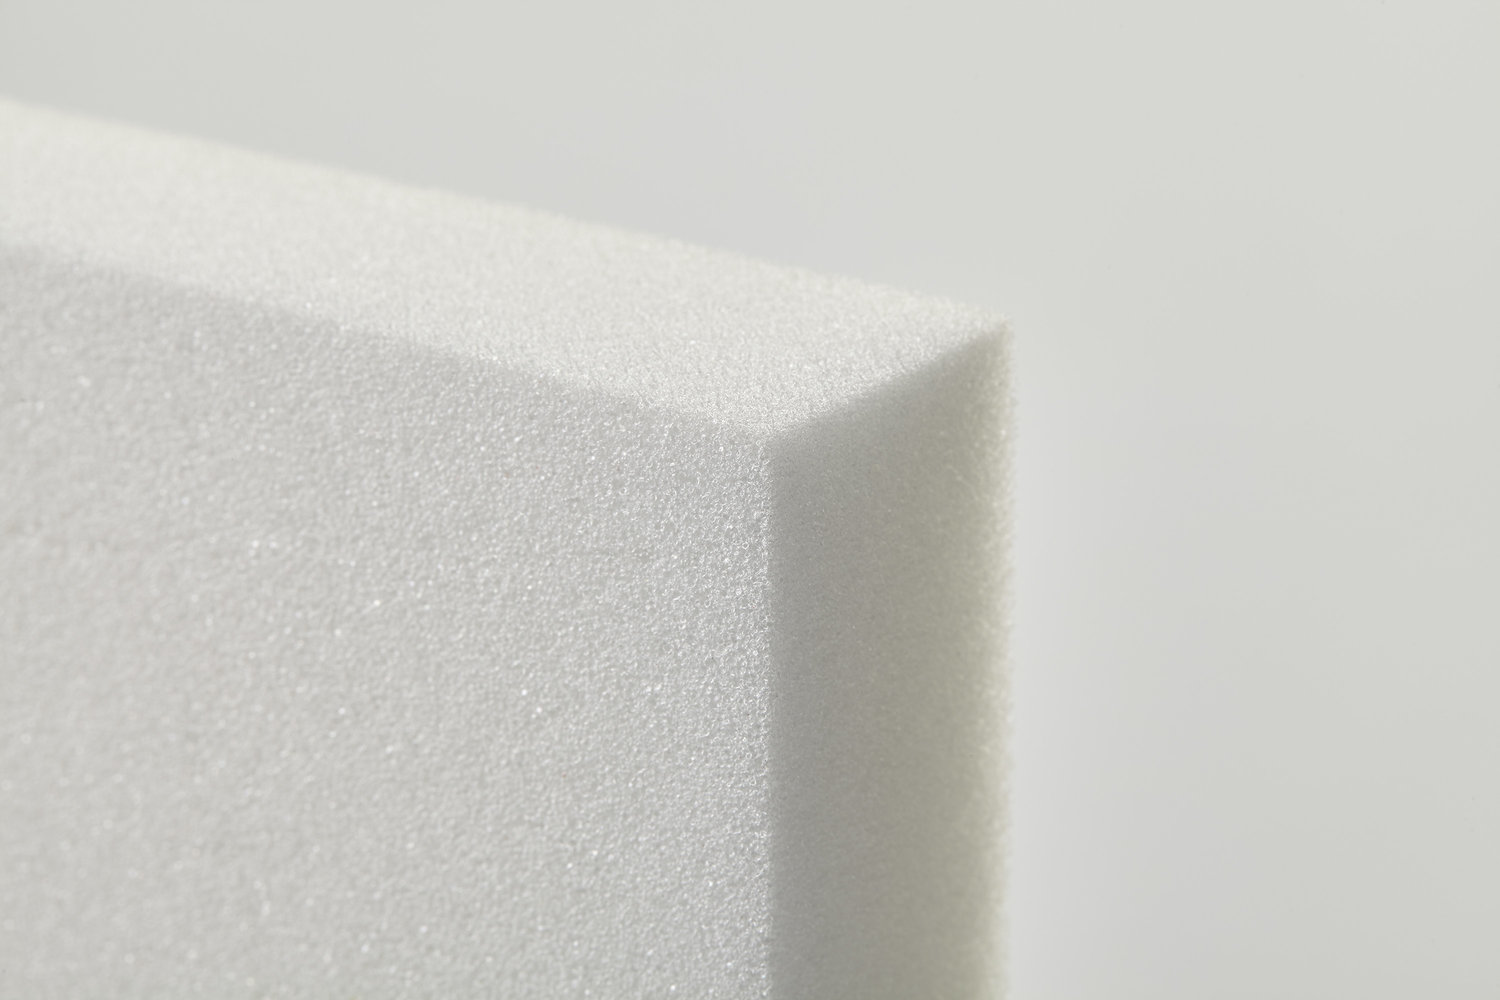 Upholstering Materials :: Shredded Foam :: Shredded Foam in 20 lb